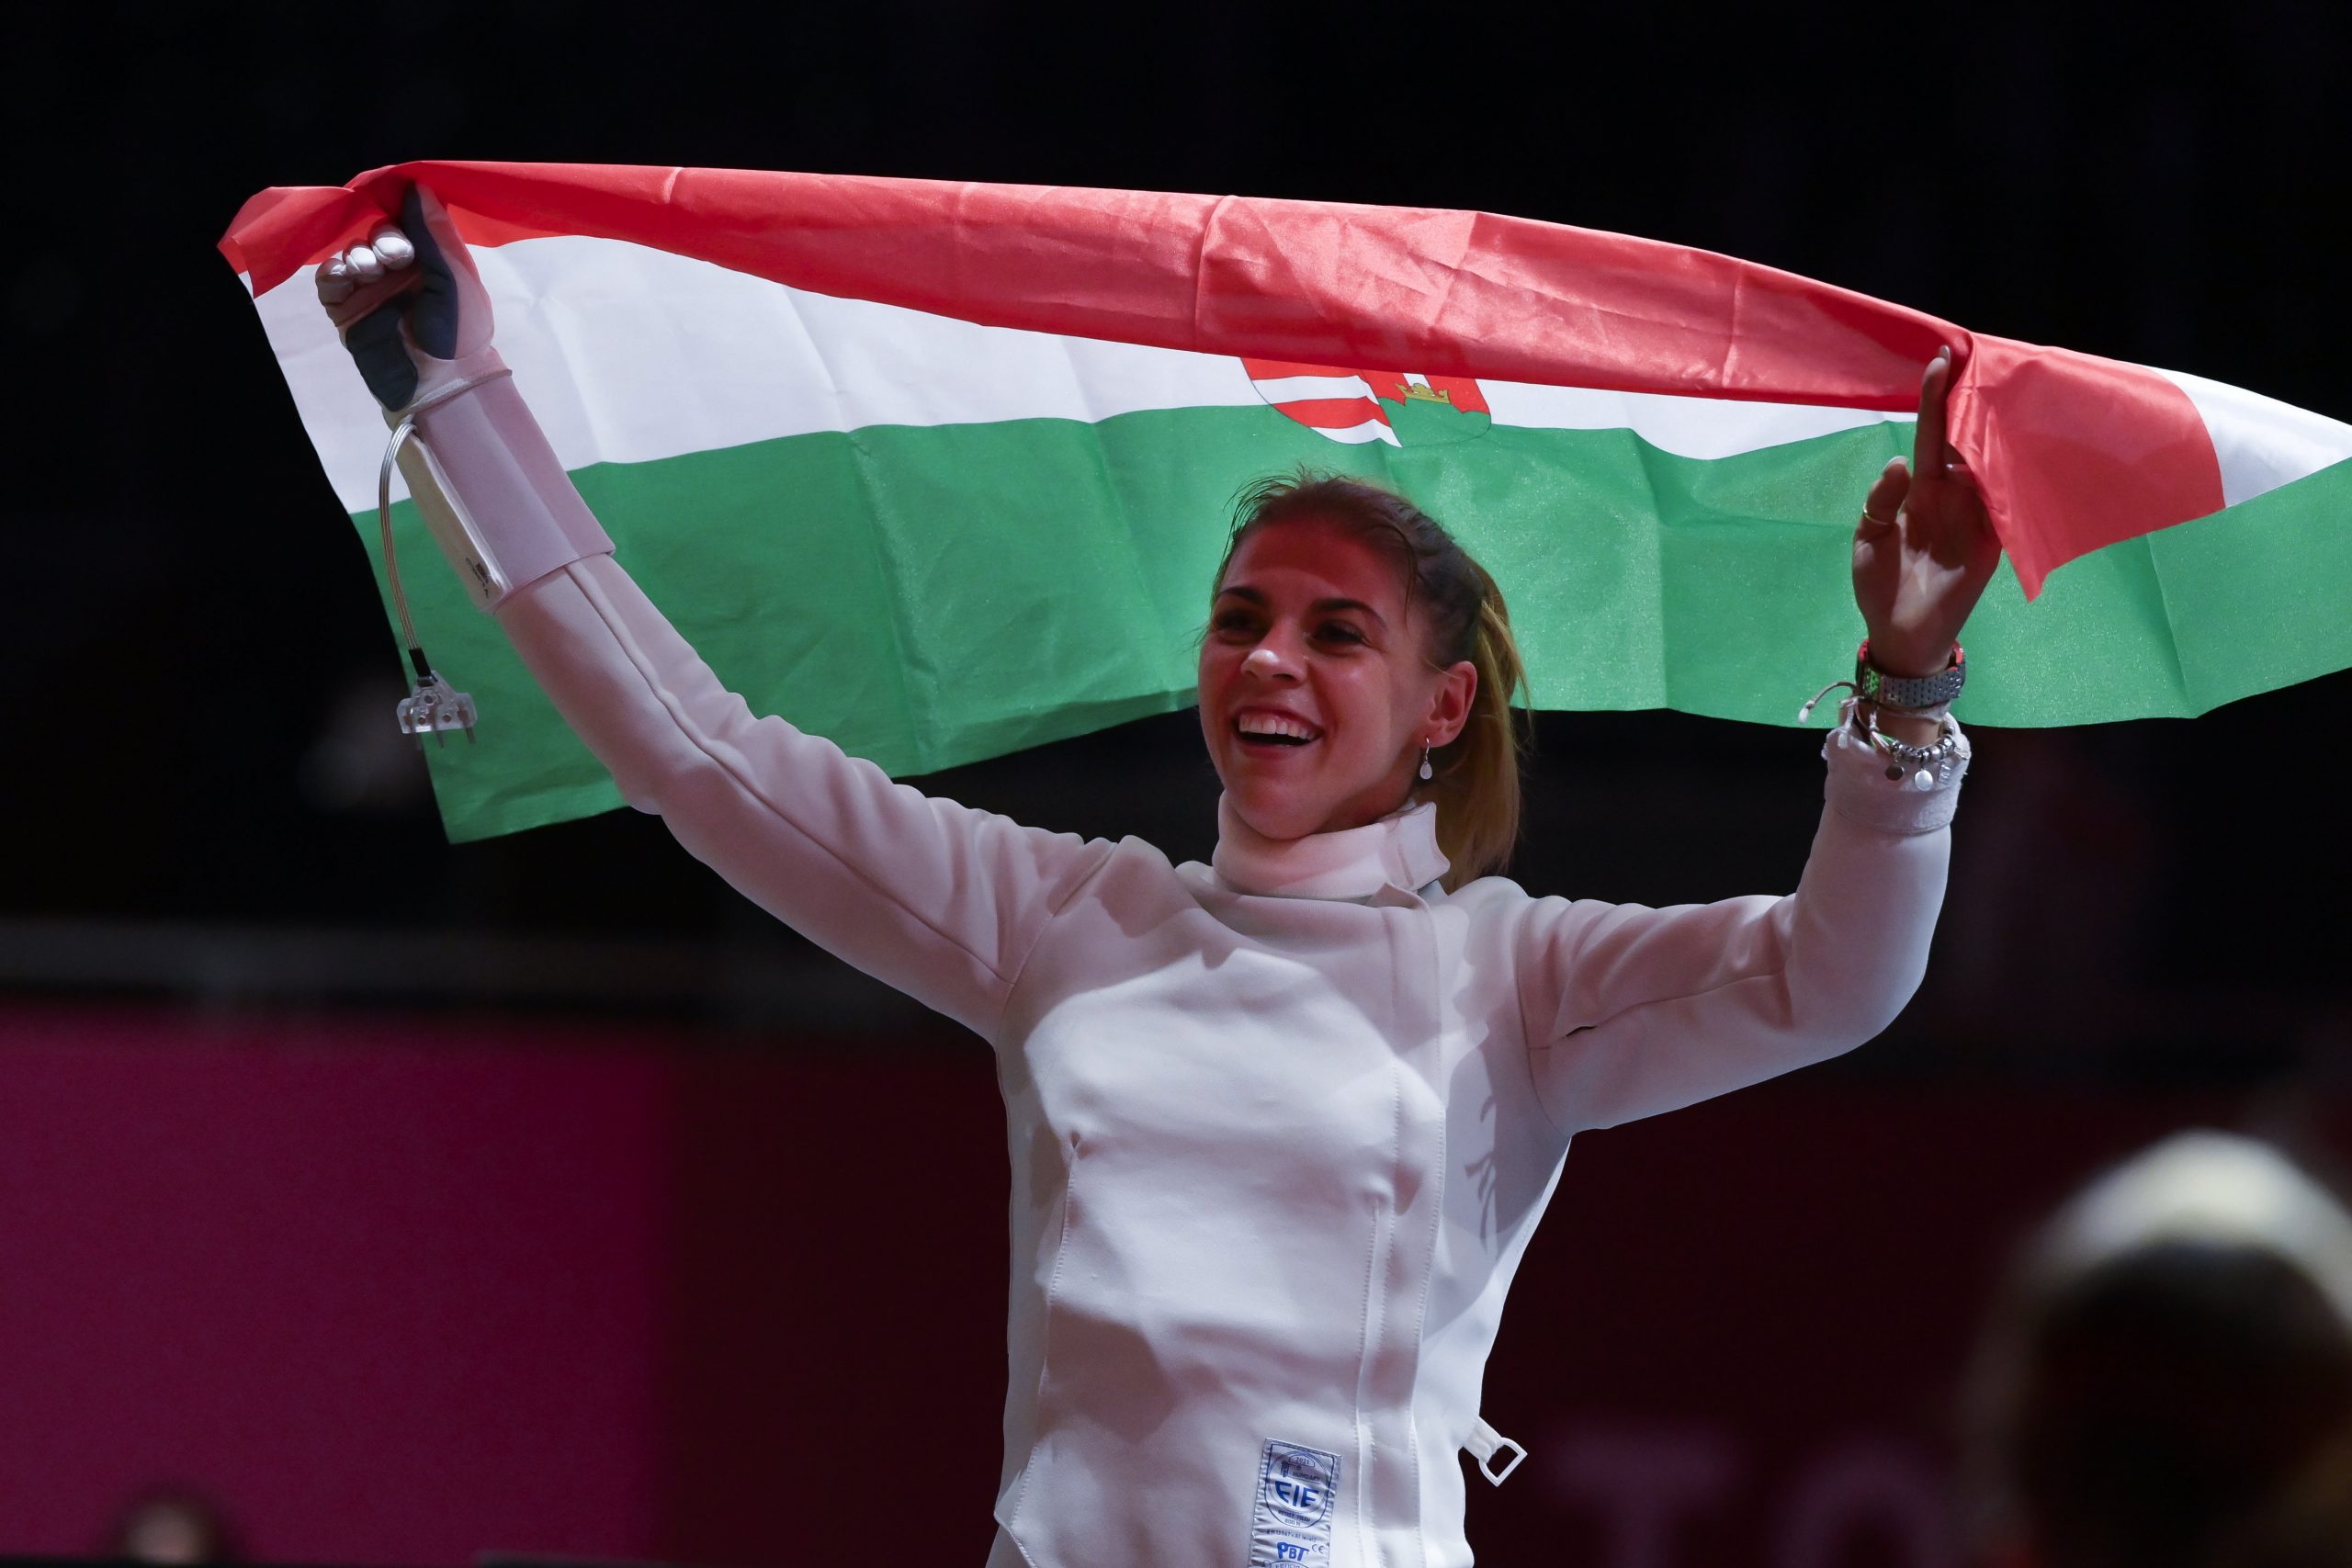 Amarilla Veres Claims Hungary's First Gold at Tokyo Paralympics